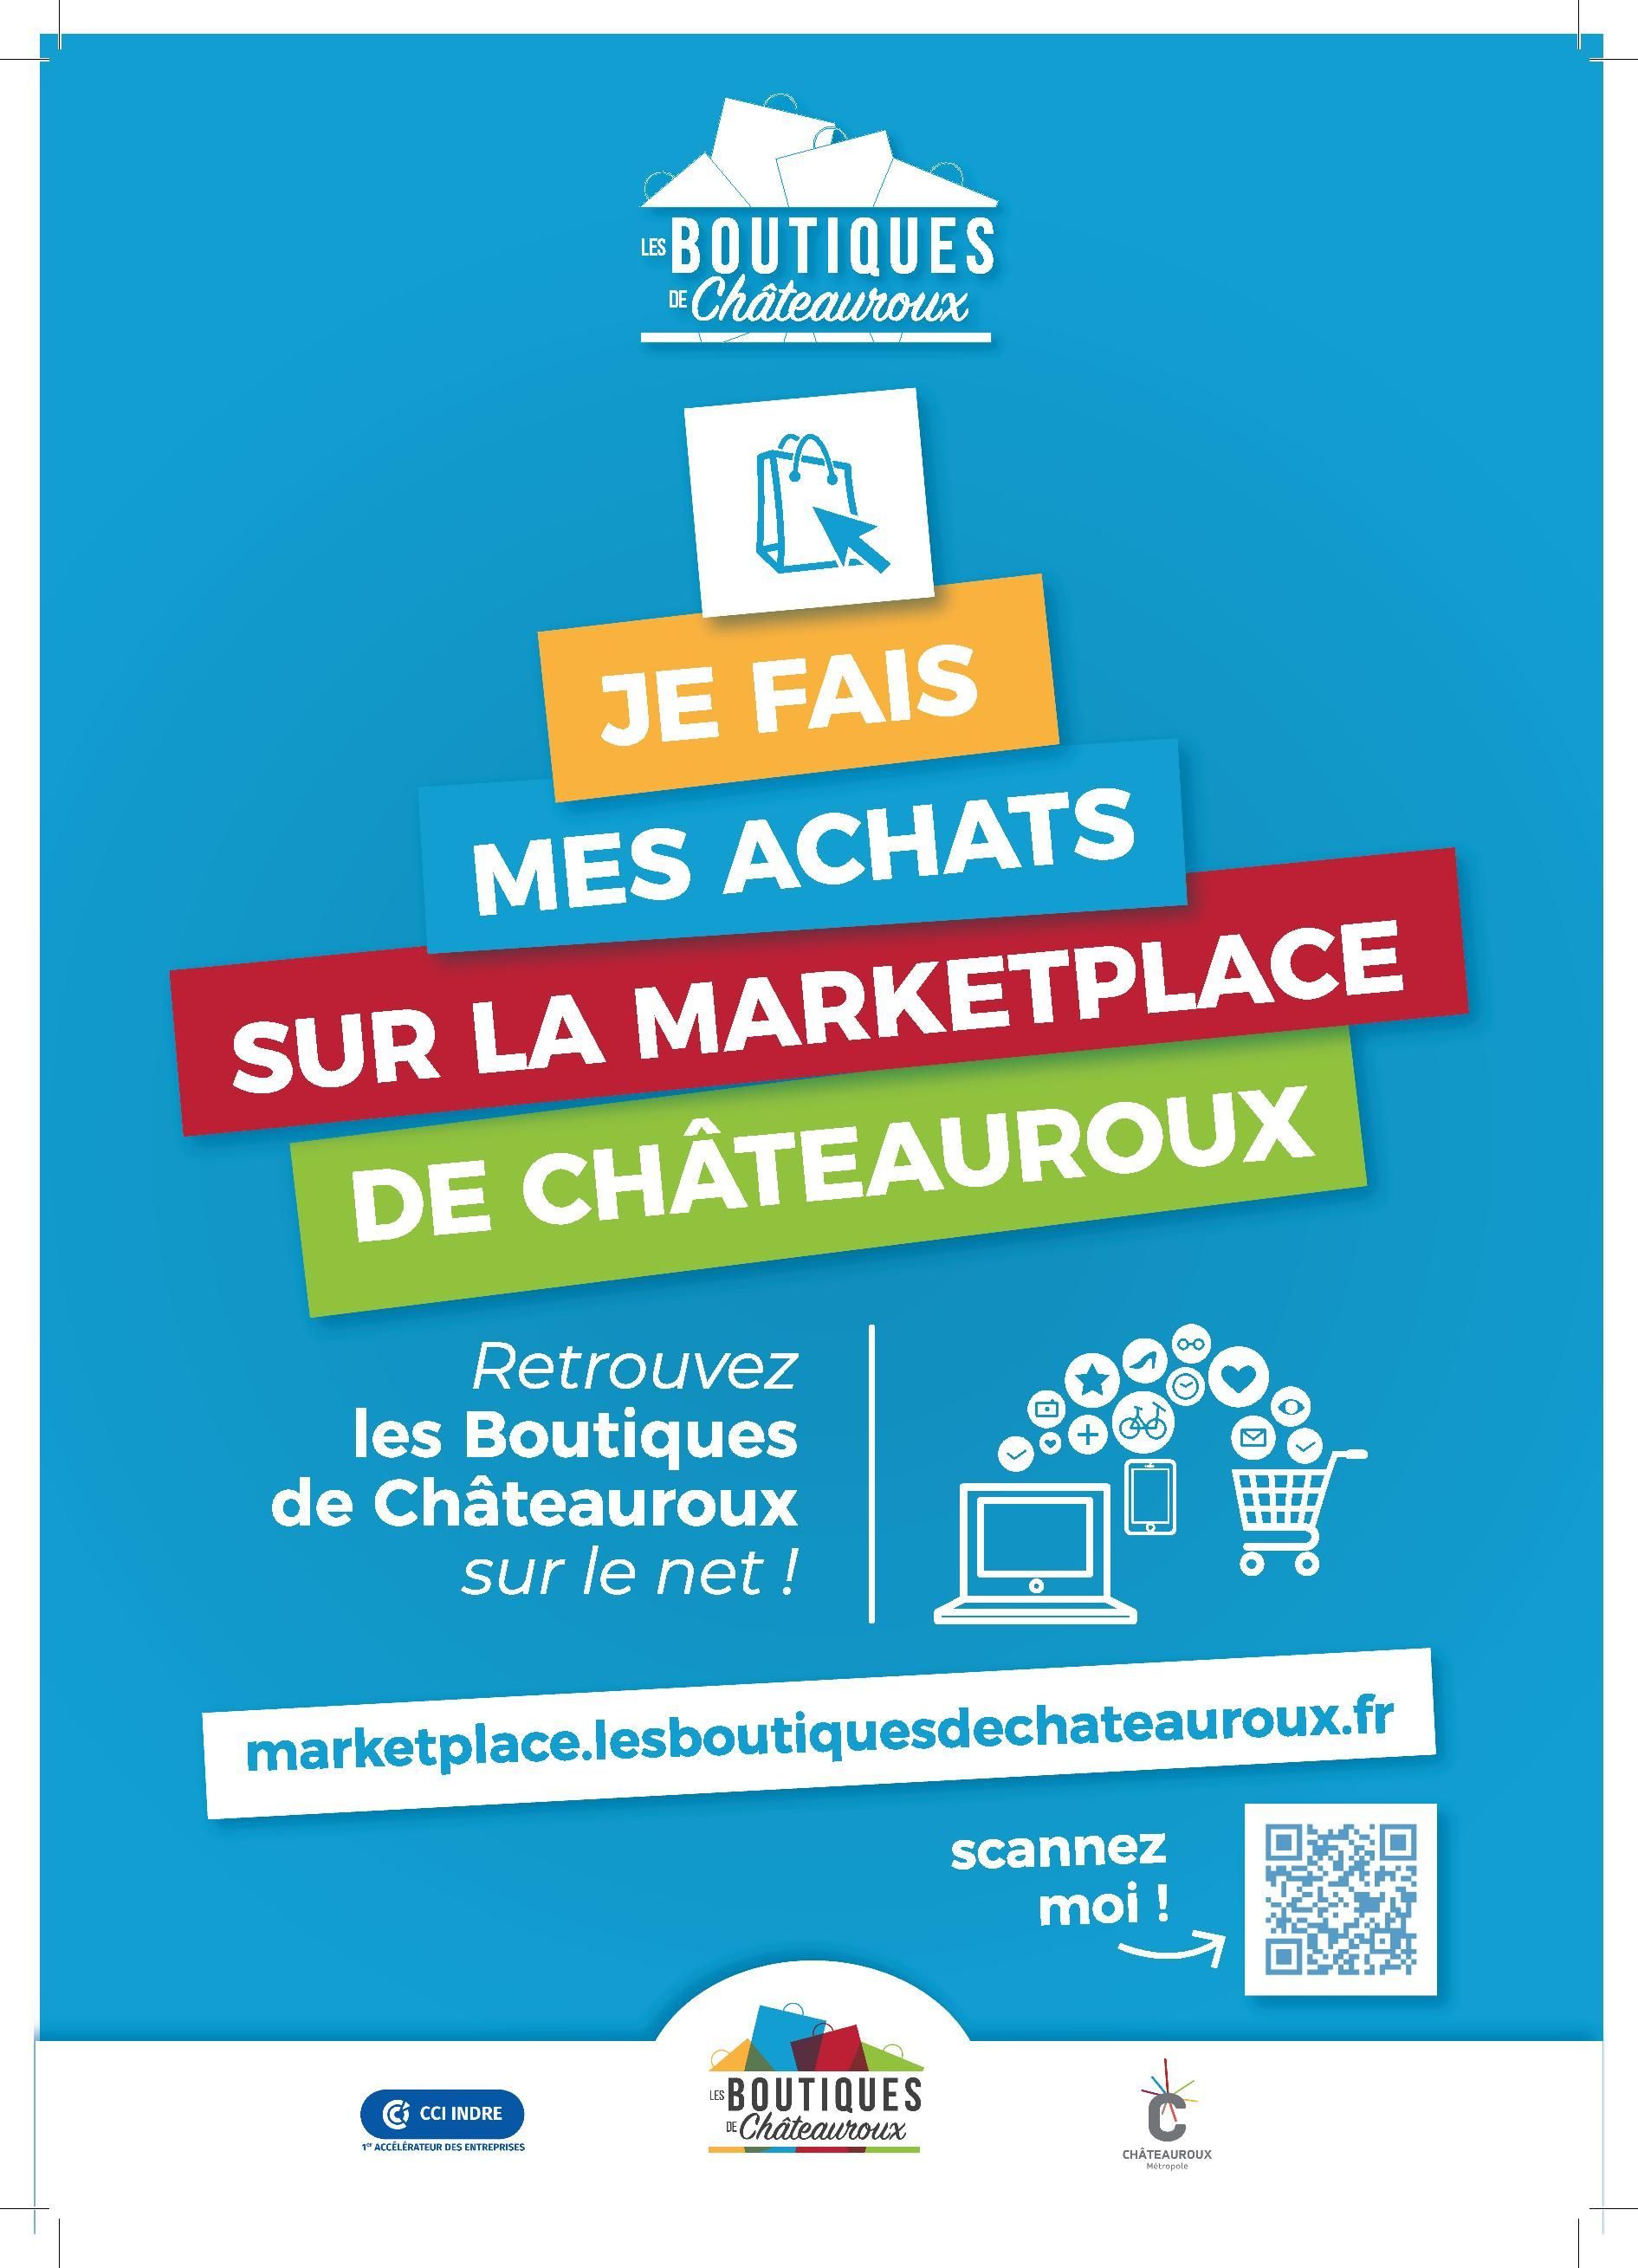 La marketplace de Châteauroux